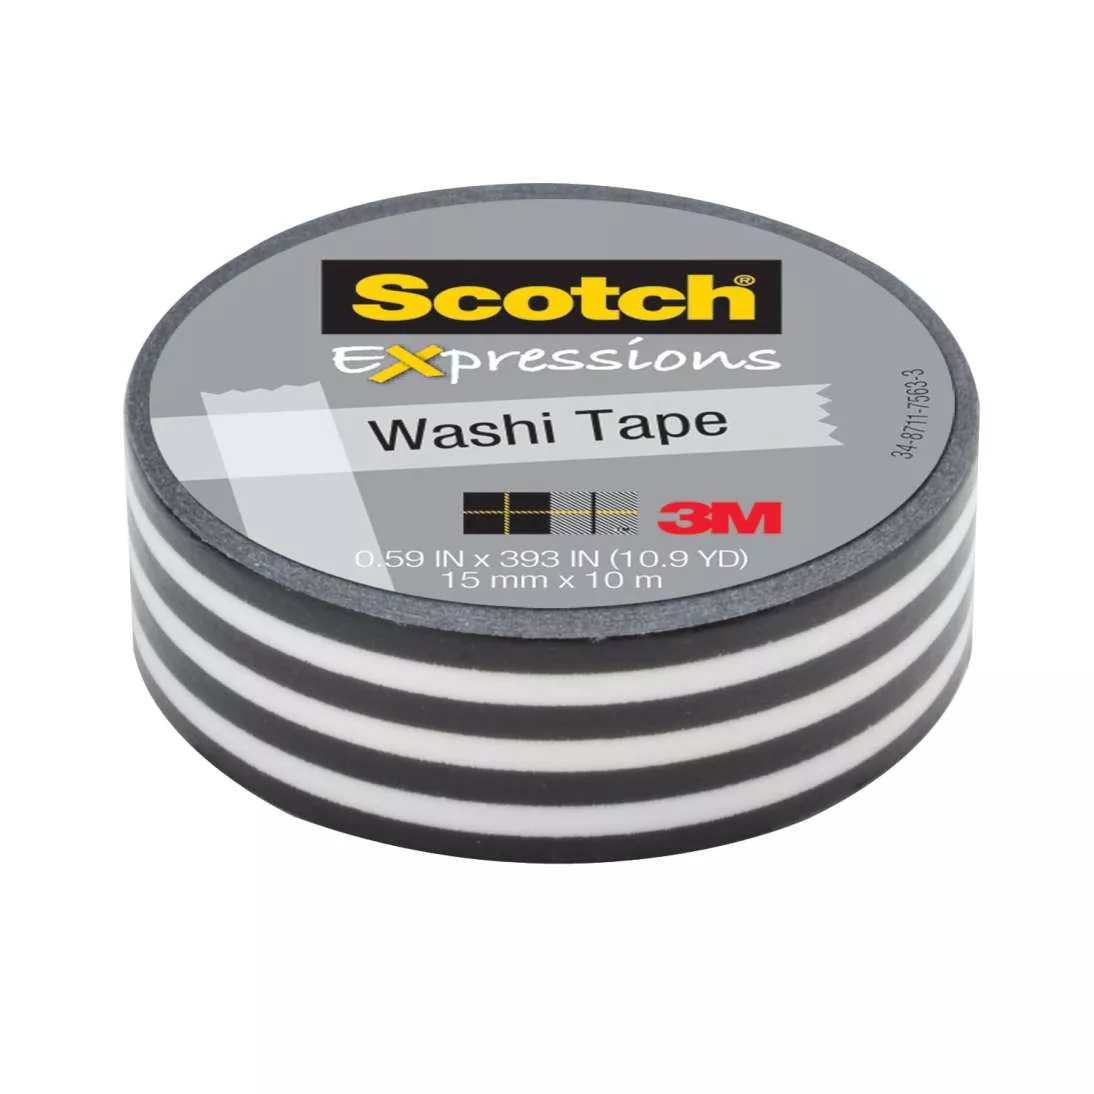 Scotch® Expressions Washi Tape C314-P43, .59 in x 393 in (15 mm x 10 m)
Black Stripe